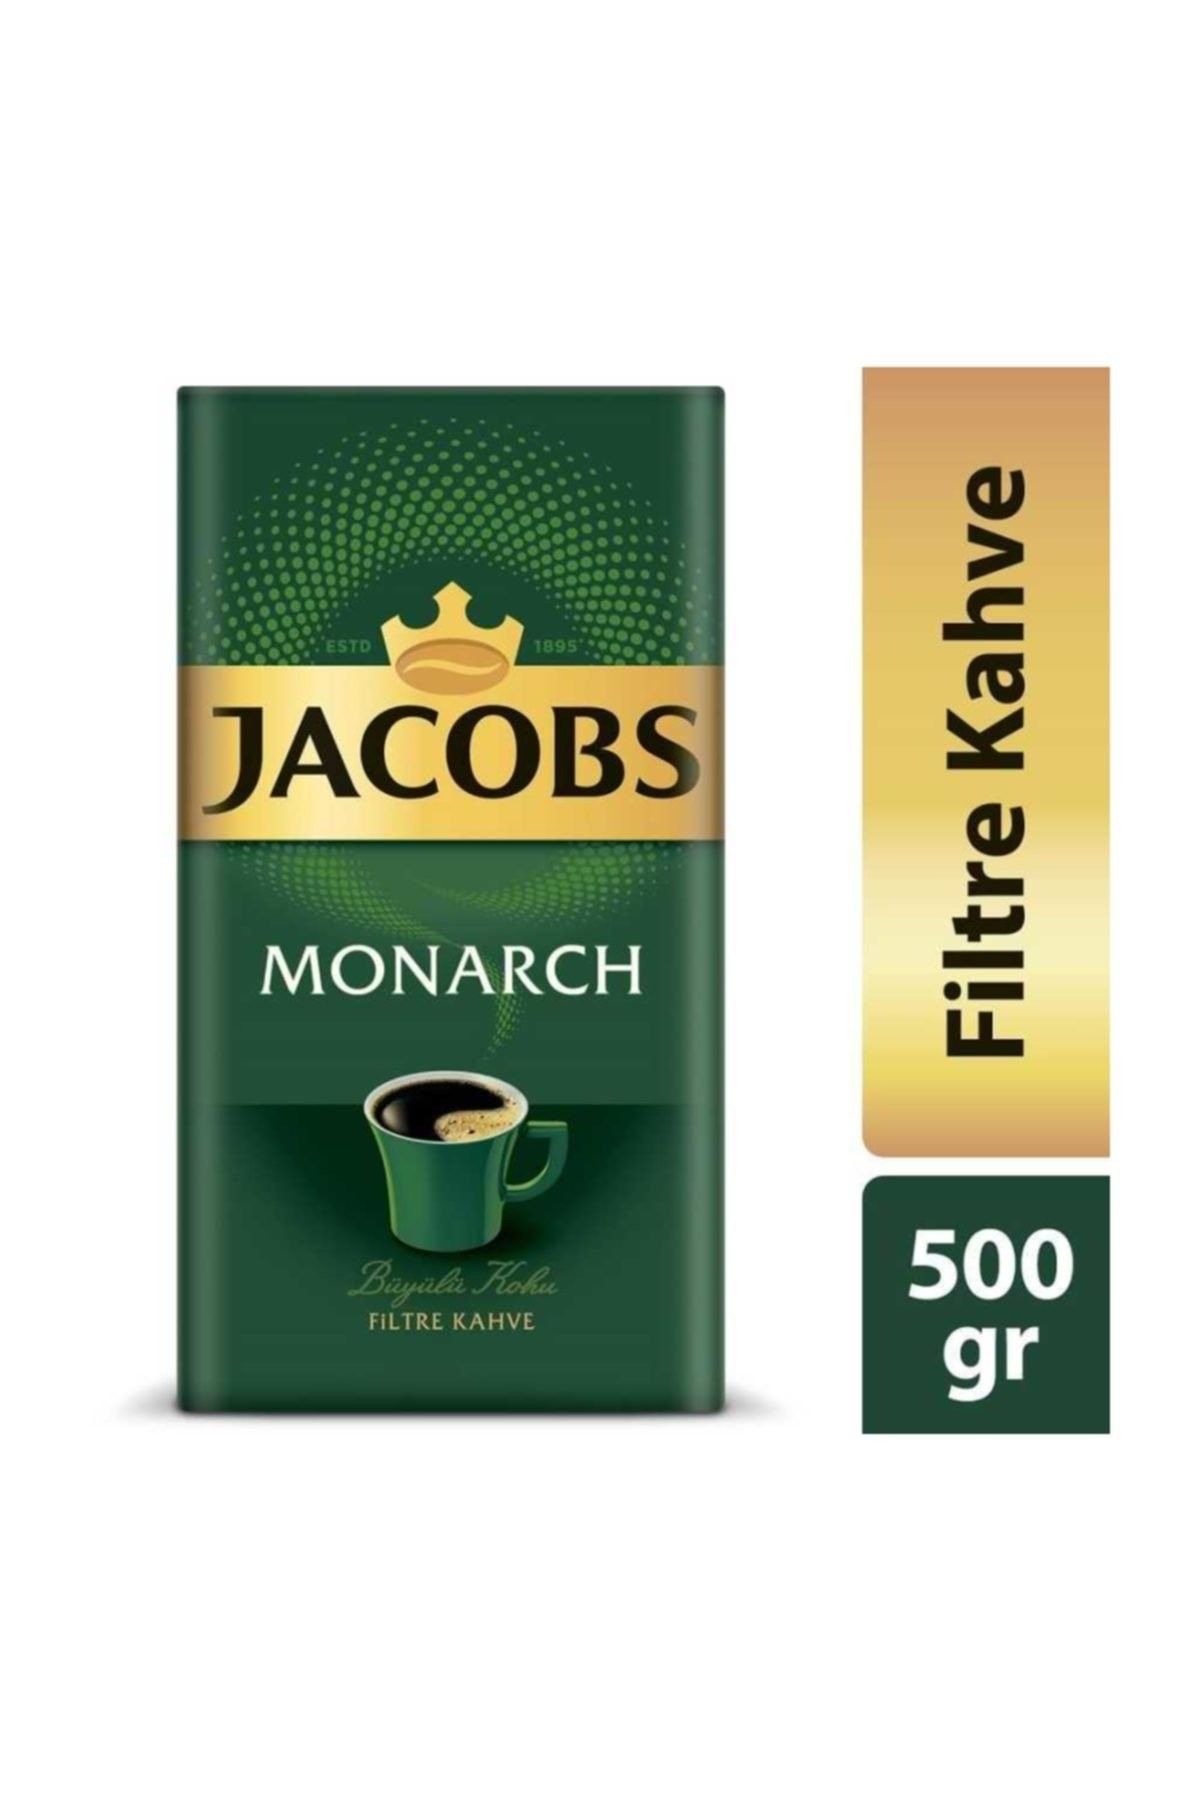 Jacobs Monarch Filtre Kahve 500 Gr.